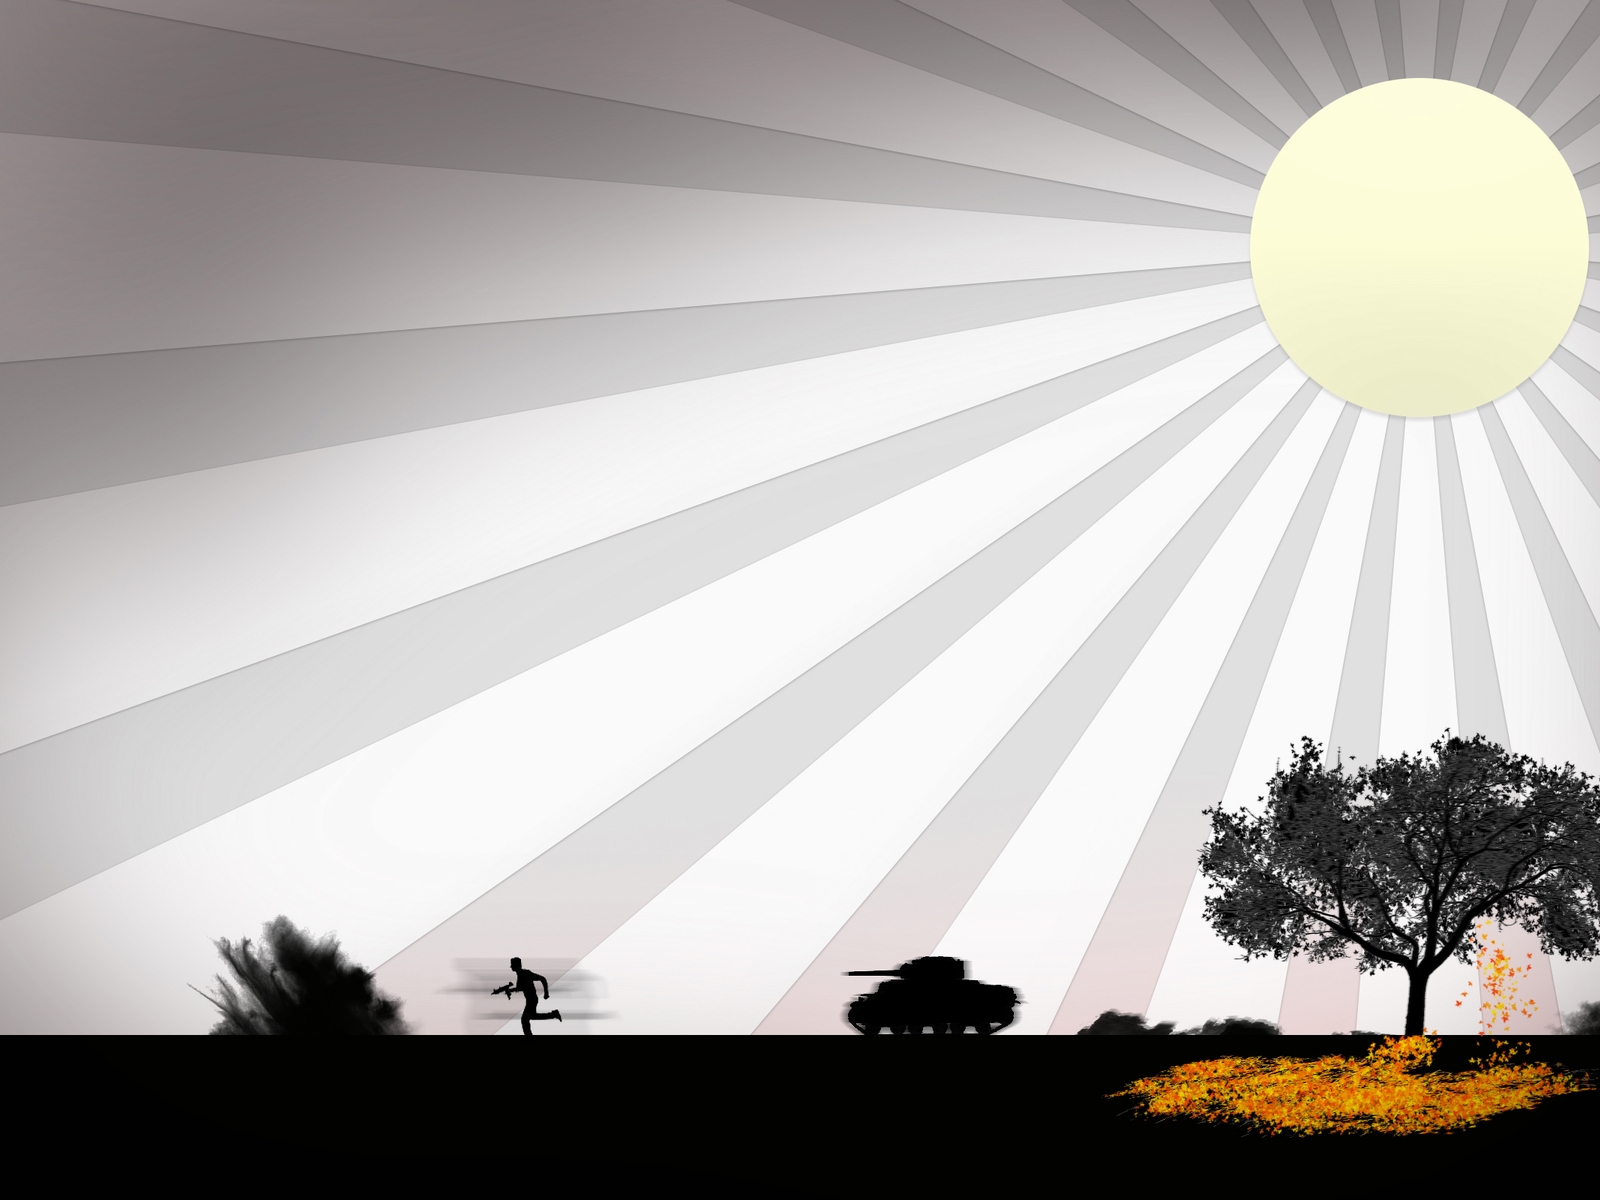 Картинка: Солнце, лучи, поле, война, солдат, танк, оружие, выстрел, дерево, листья